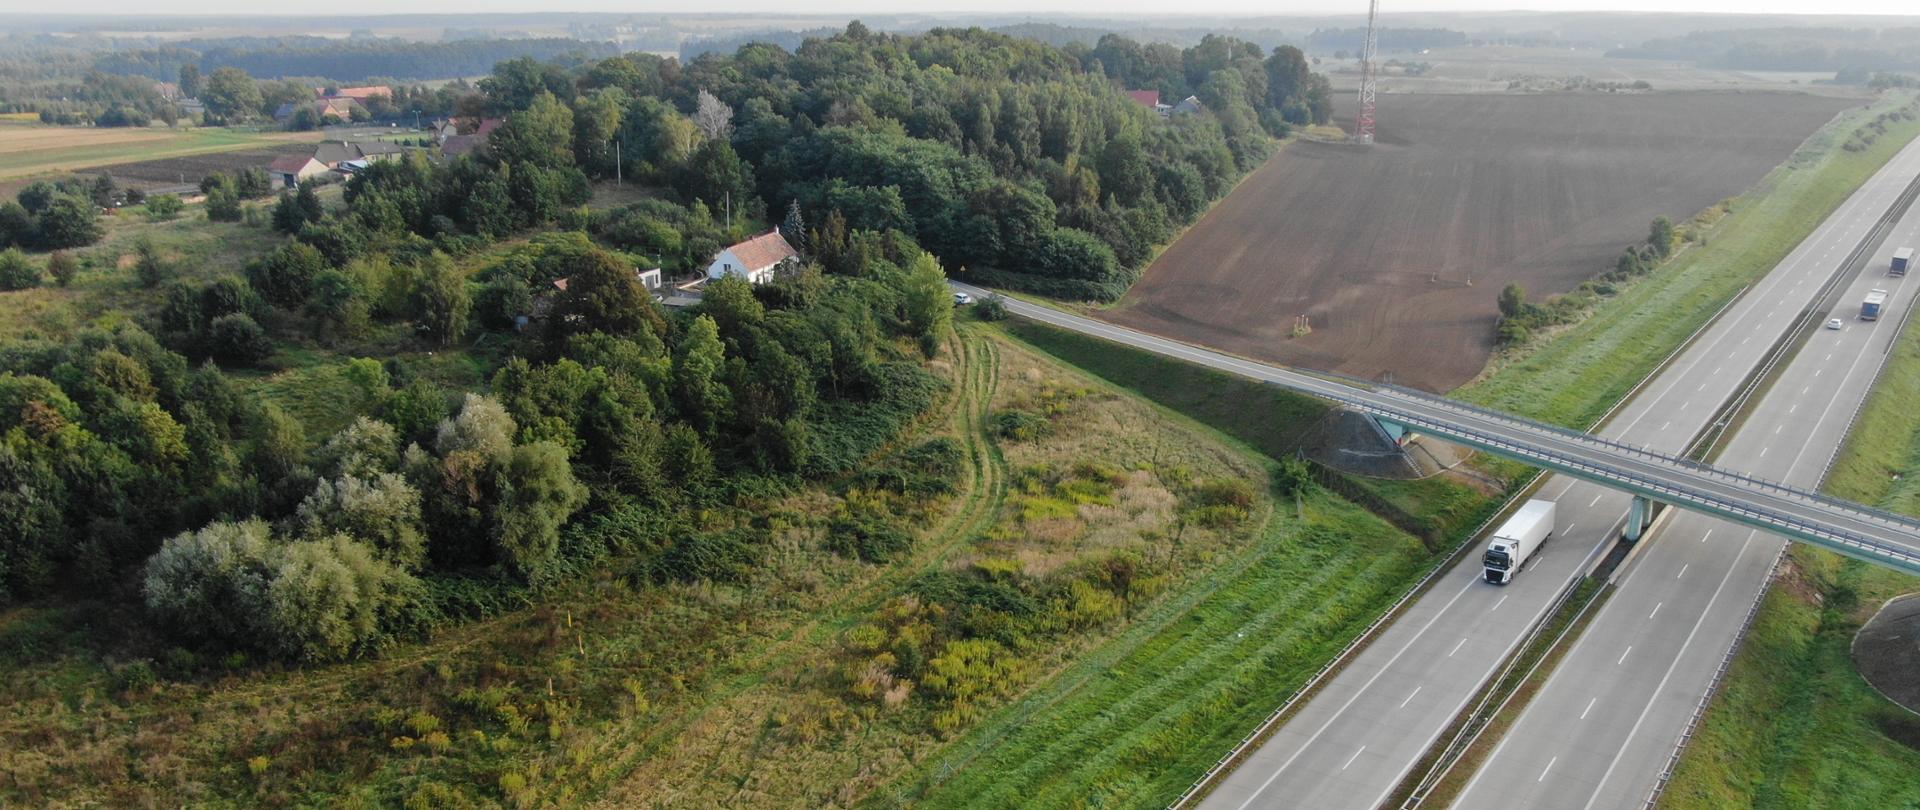 na zdjęciu widać dwie jezdnie autostrady A4, w tle pola i budynki